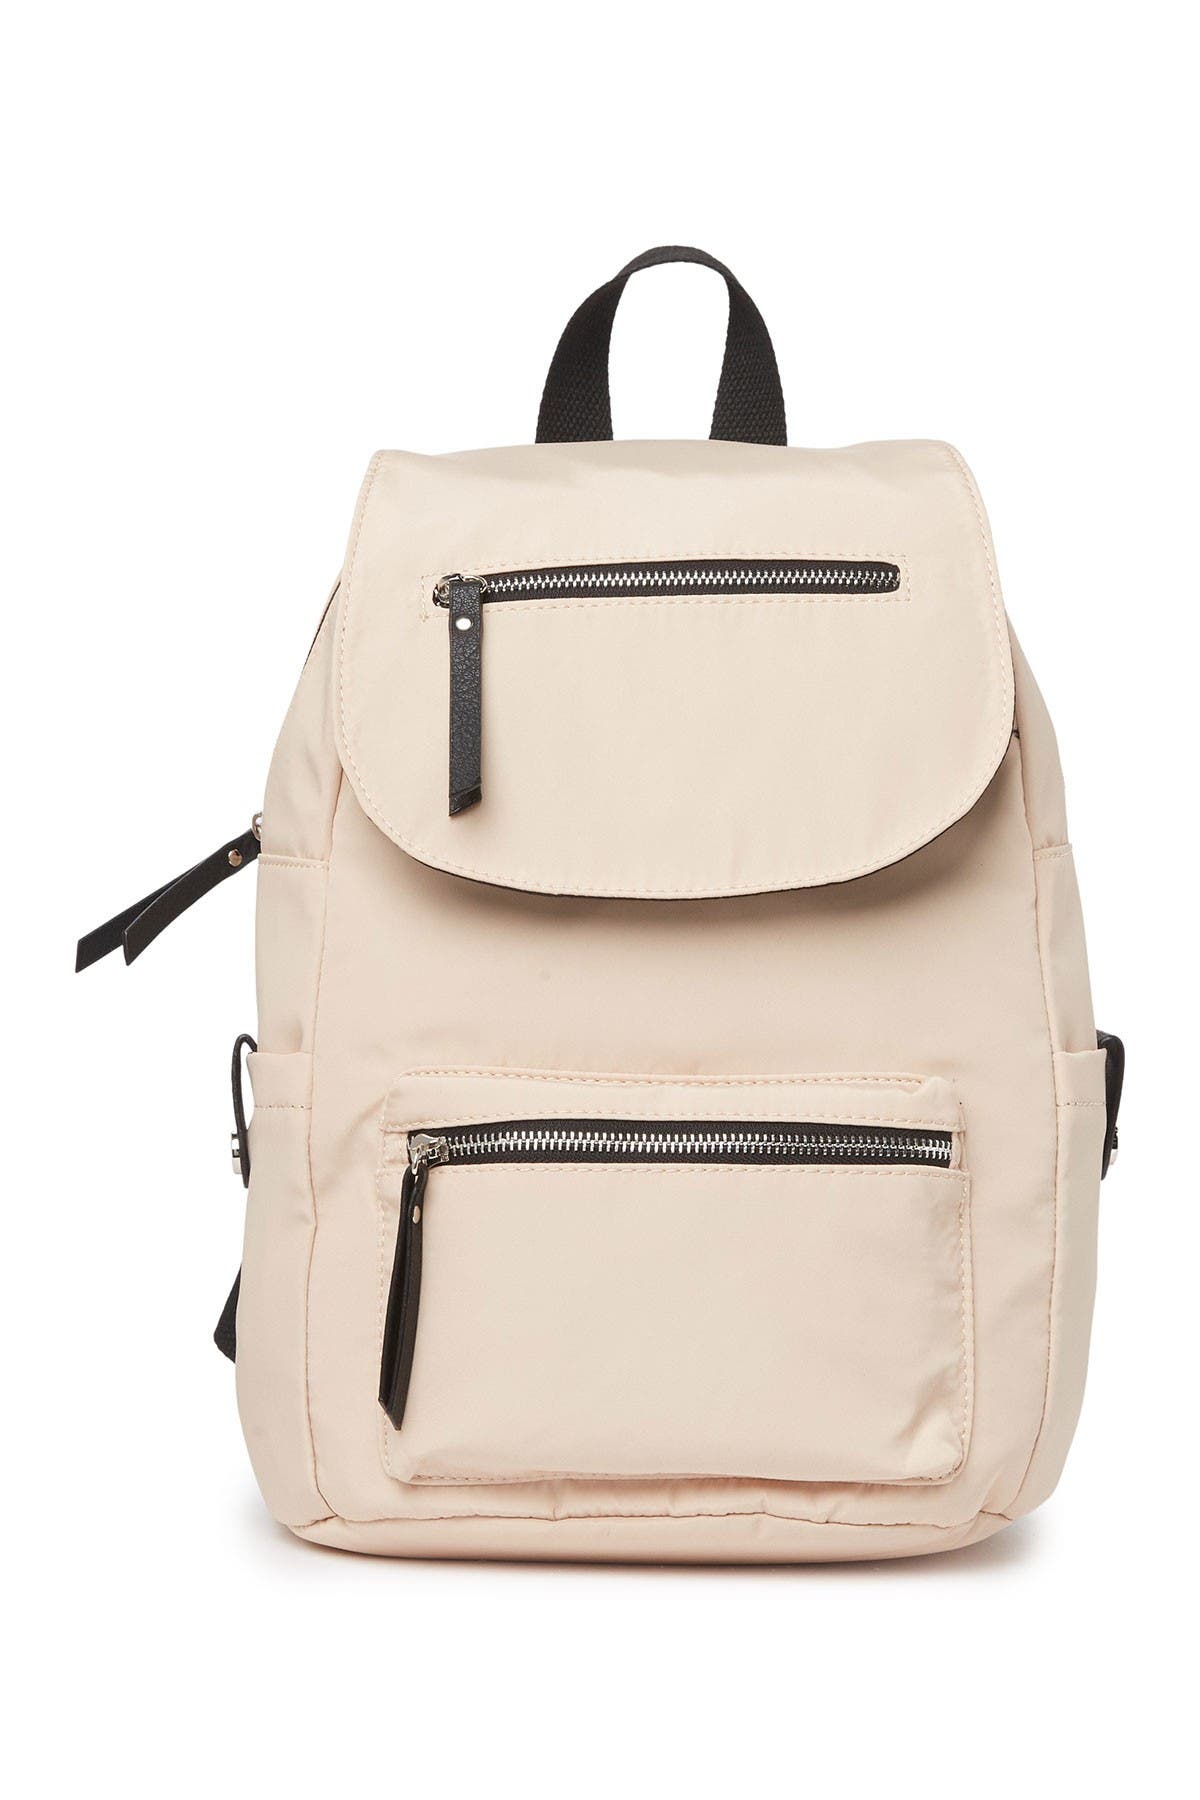 Madden Girl Proper Flap Nylon Backpack In Open White37